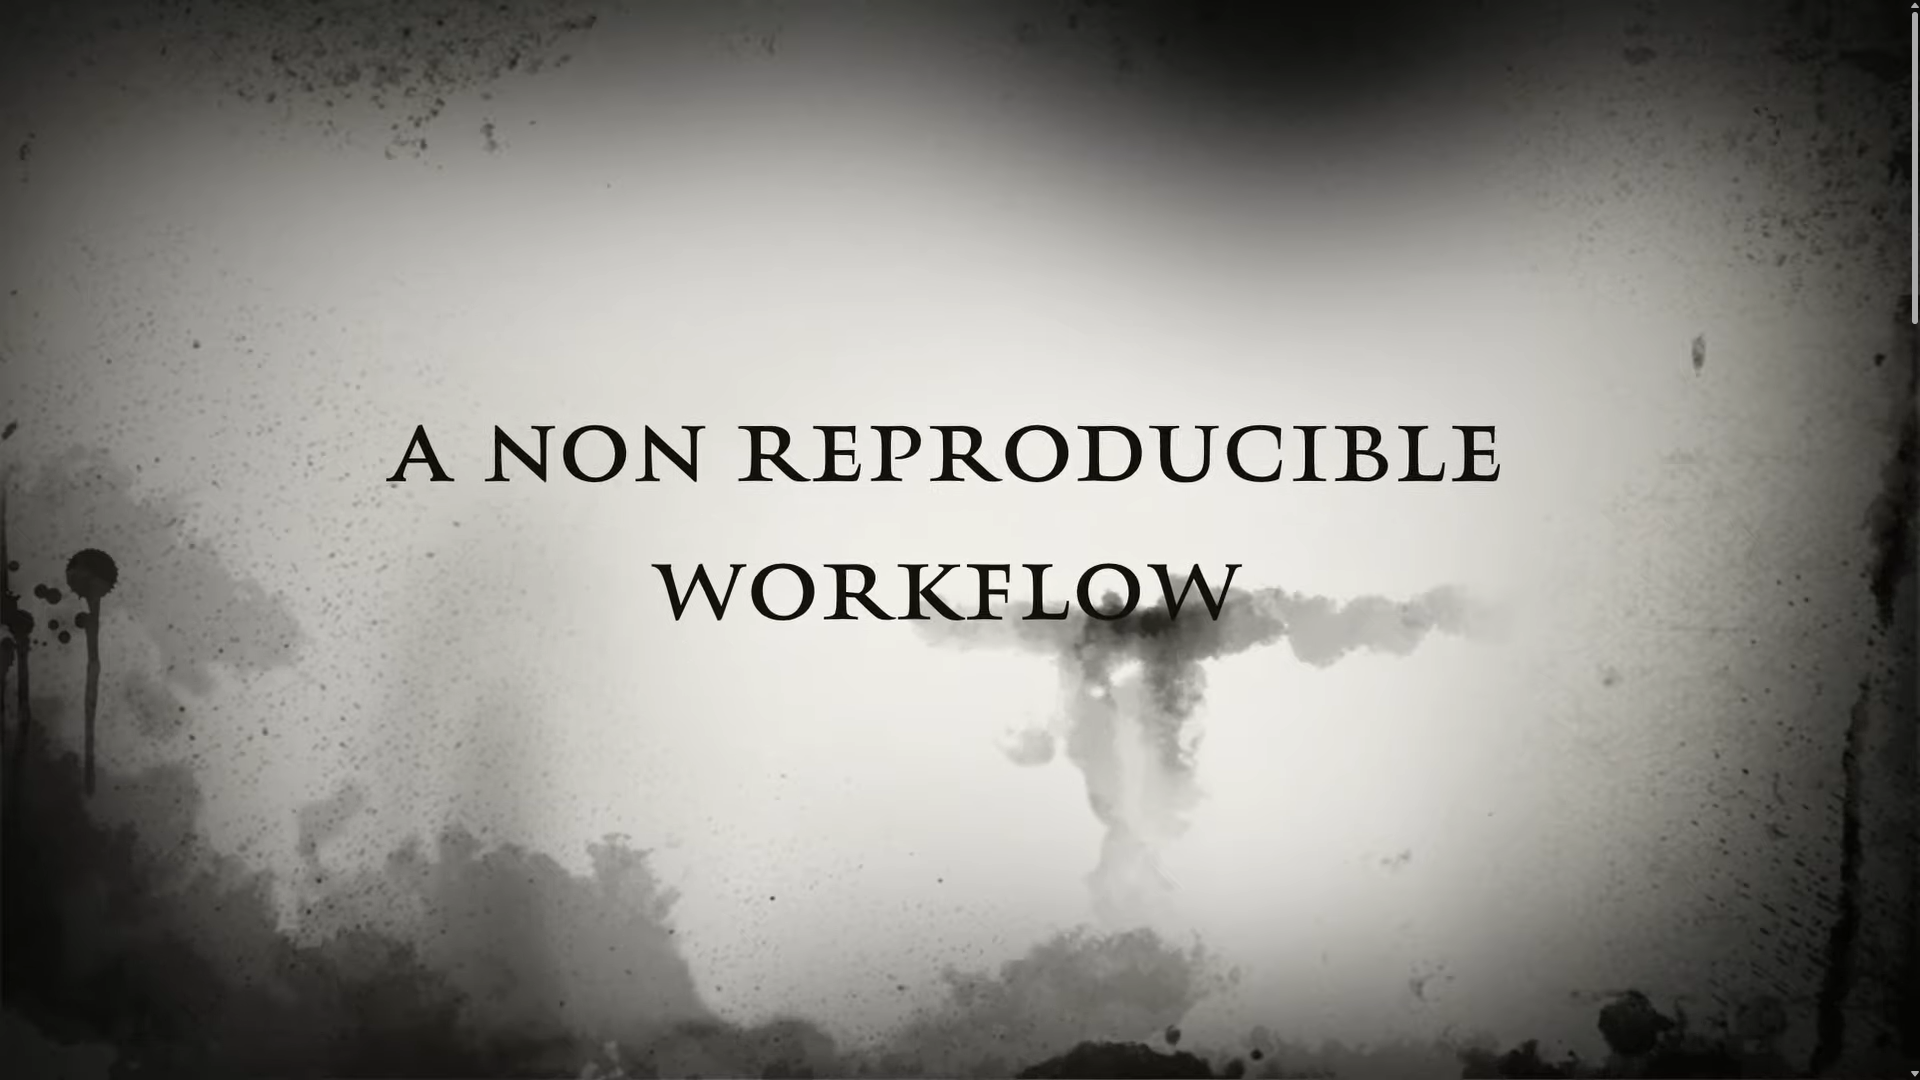 Video: A Non Reproducible Workflow